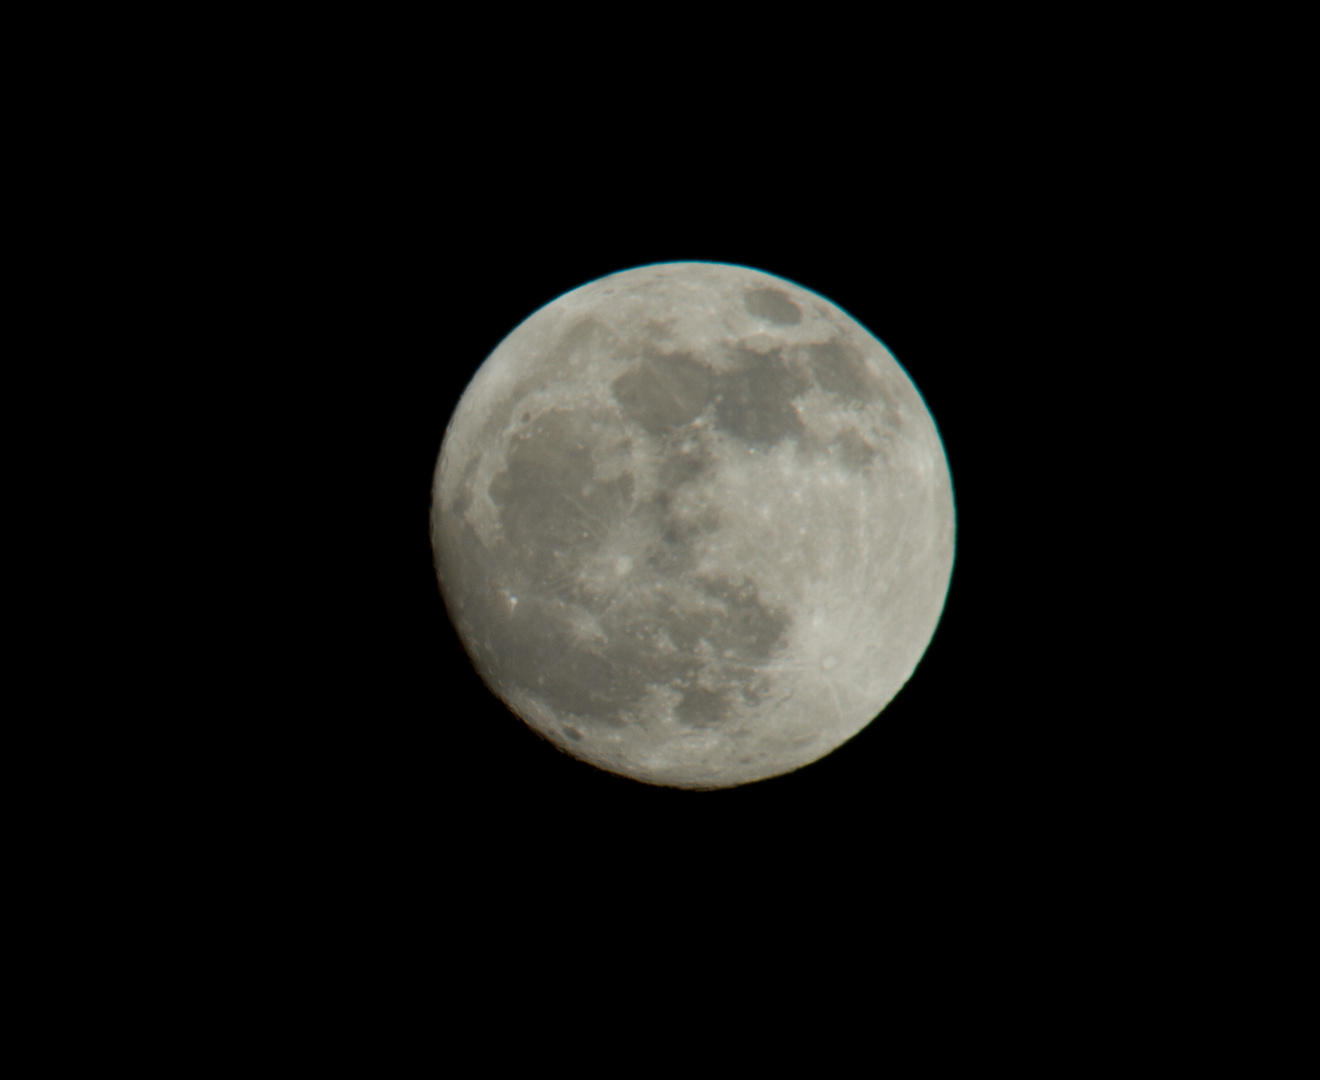 Mond vom 24.04.2013